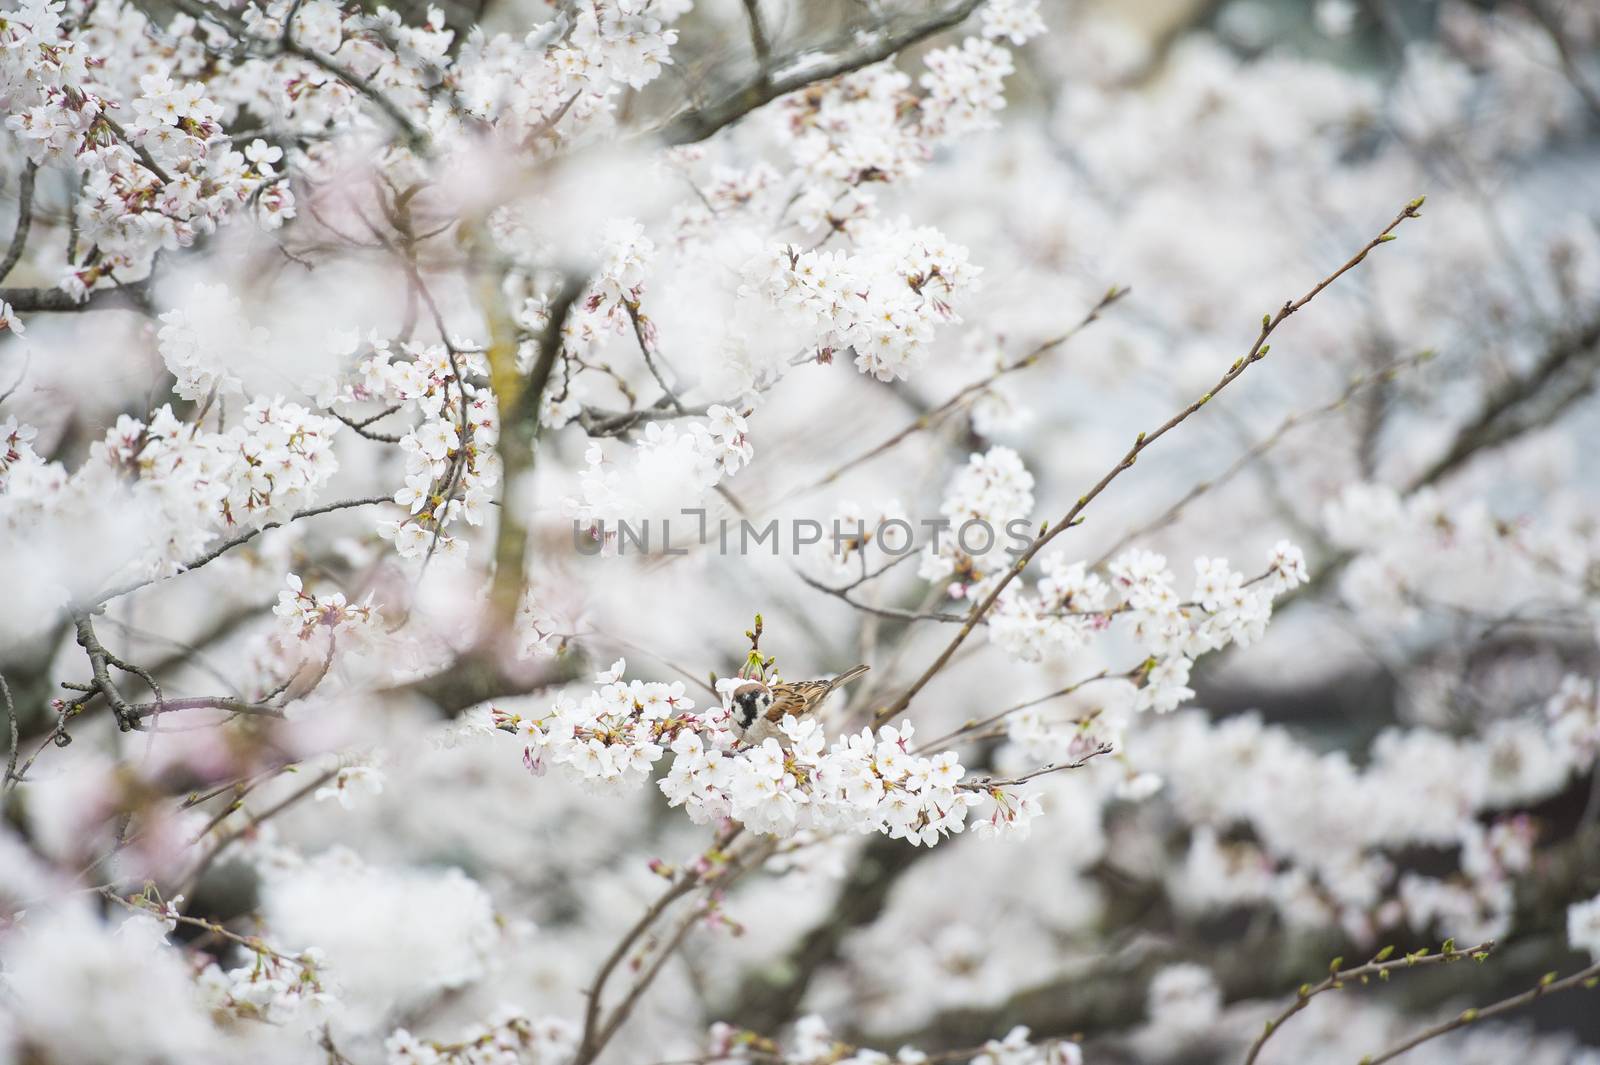 Japanese white flower and little bird